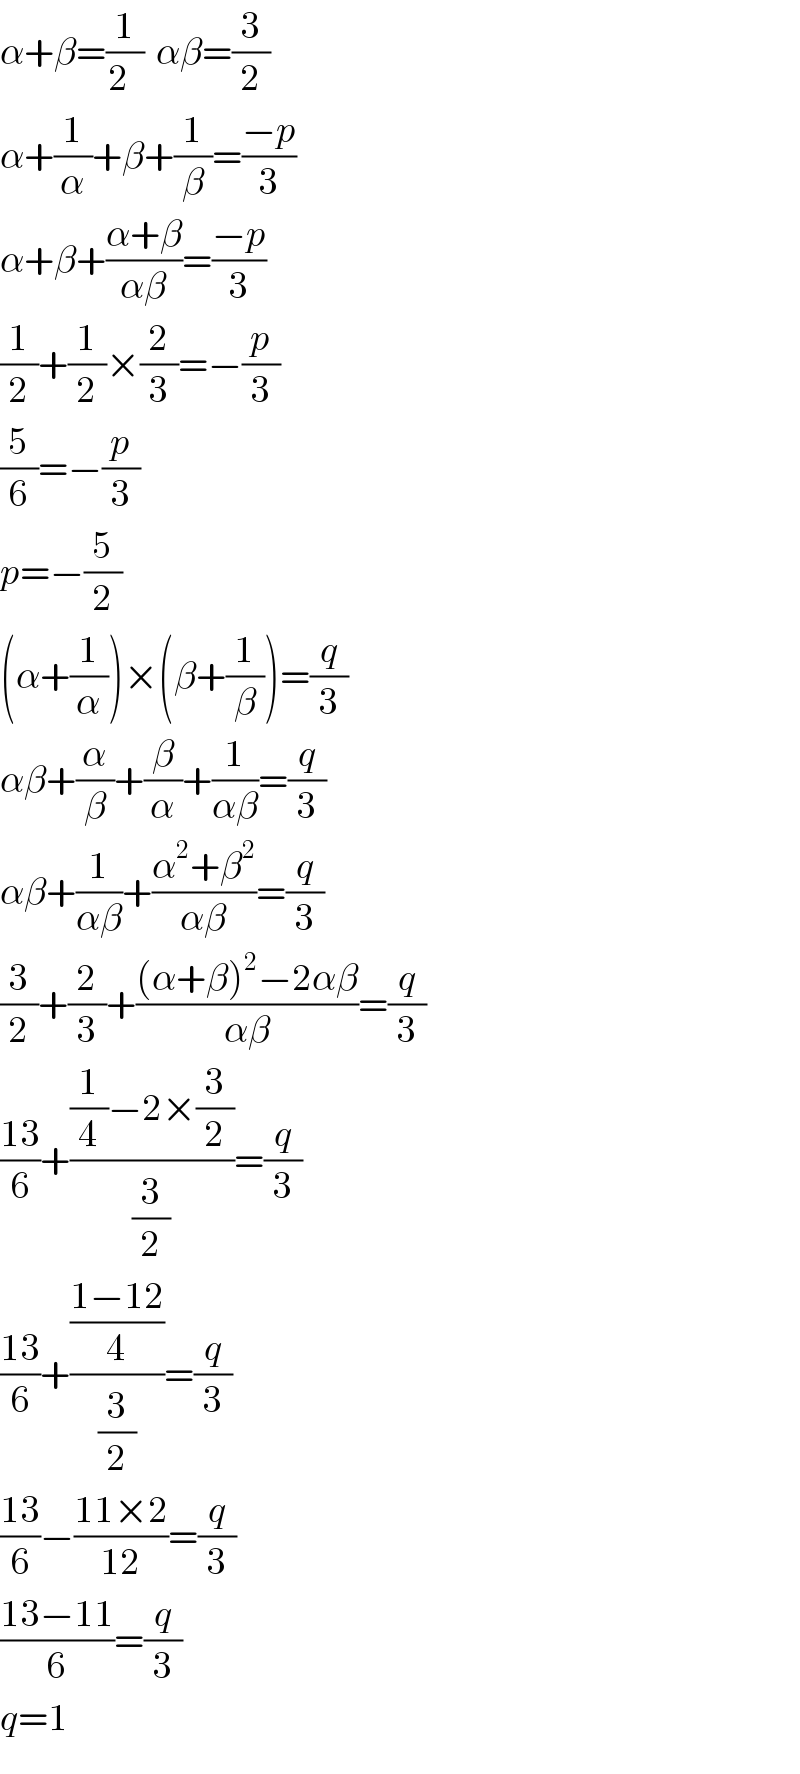 α+β=(1/(2  ))  αβ=(3/2)  α+(1/α)+β+(1/β)=((−p)/3)  α+β+((α+β)/(αβ))=((−p)/3)  (1/2)+(1/2)×(2/3)=−(p/3)  (5/6)=−(p/3)  p=−(5/2)  (α+(1/α))×(β+(1/β))=(q/3)  αβ+(α/β)+(β/α)+(1/(αβ))=(q/3)  αβ+(1/(αβ))+((α^2 +β^2 )/(αβ))=(q/3)  (3/2)+(2/3)+(((α+β)^2 −2αβ)/(αβ))=(q/3)  ((13)/6)+(((1/4)−2×(3/2))/(3/2))=(q/3)  ((13)/6)+(((1−12)/4)/(3/2))=(q/3)  ((13)/6)−((11×2)/(12))=(q/3)  ((13−11)/6)=(q/3)  q=1  